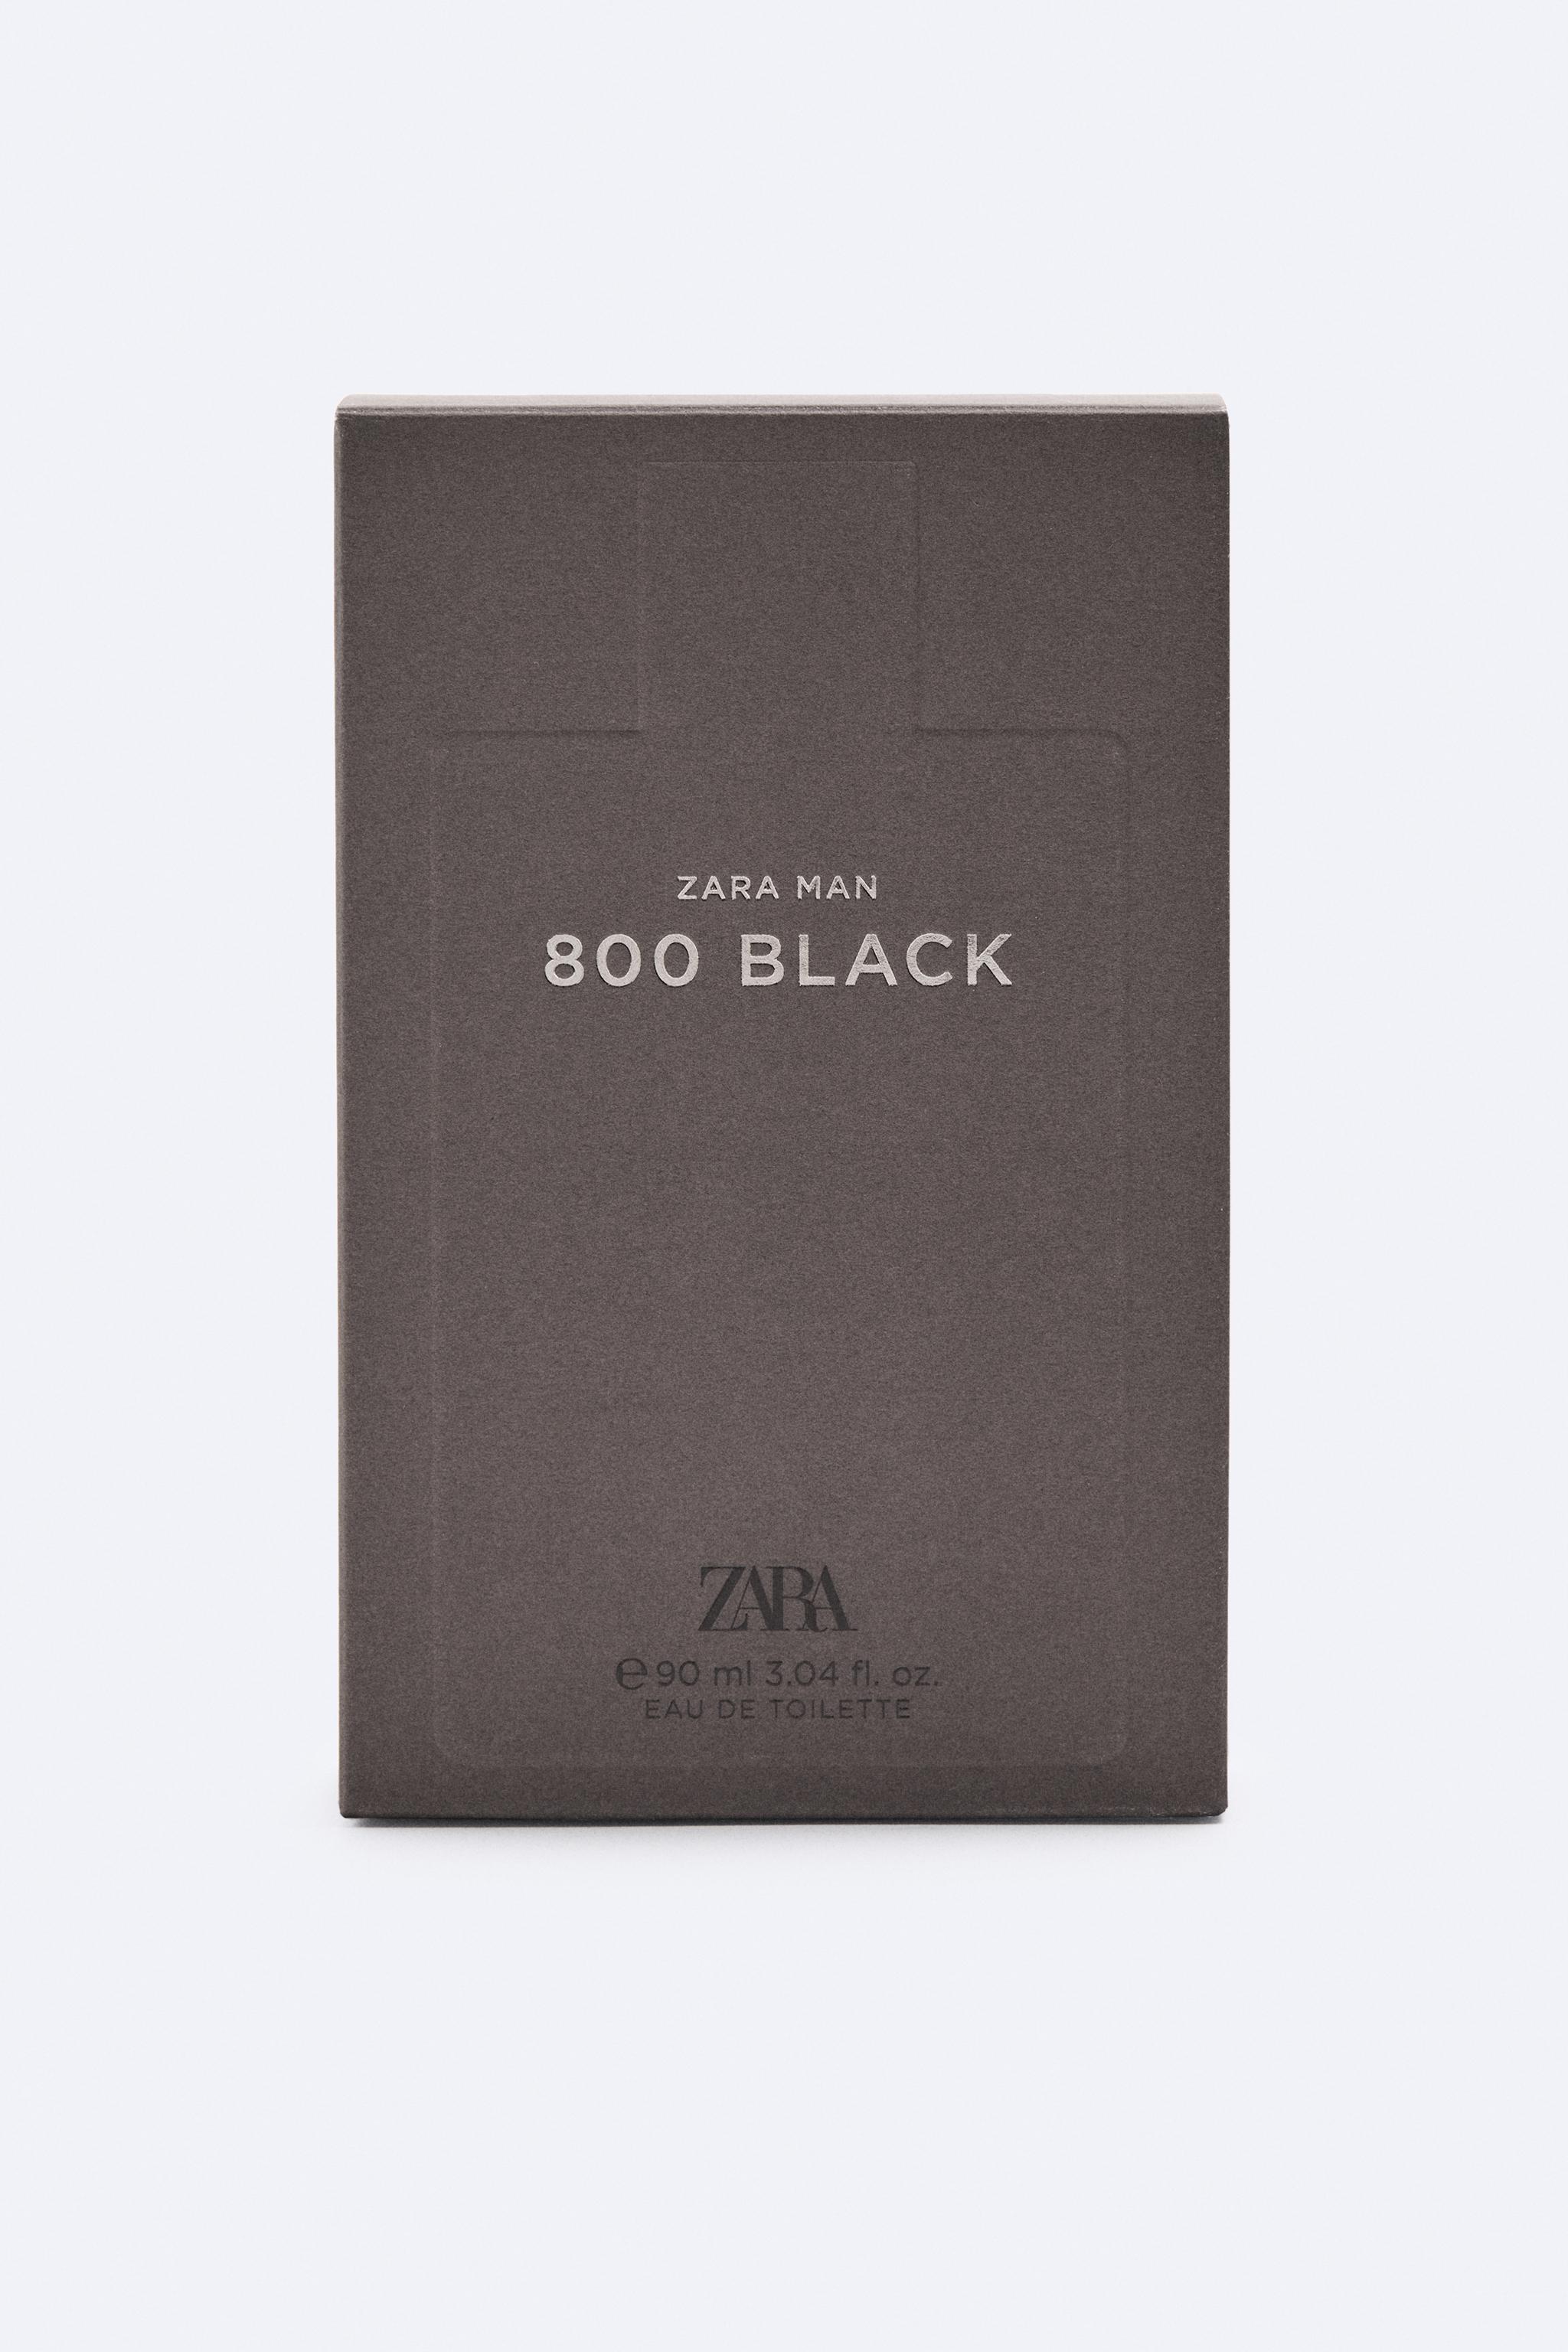 Zara 800 Black Eau de Toilette Review. My favourite fragrance from Zara —  DAPPER & GROOMED